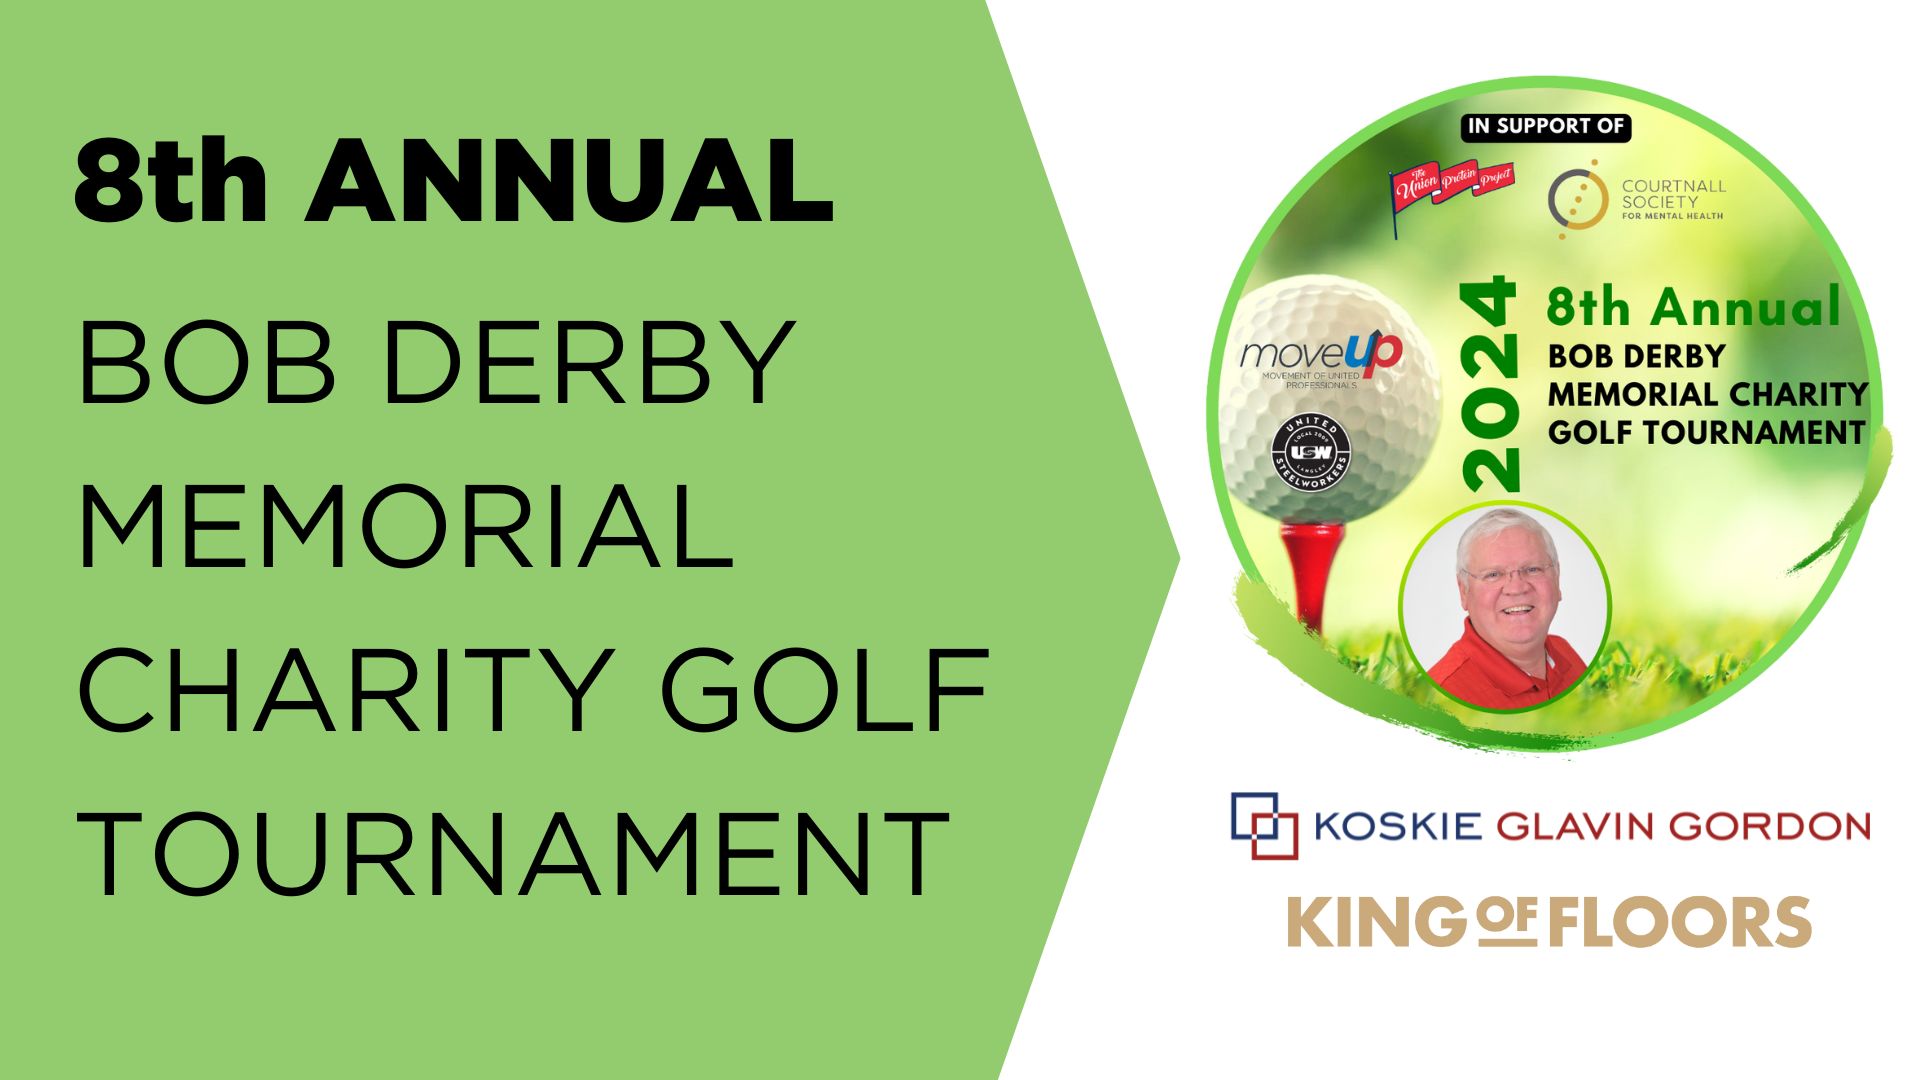 8th Annual Bob Derby Memorial Charity Golf Tournament